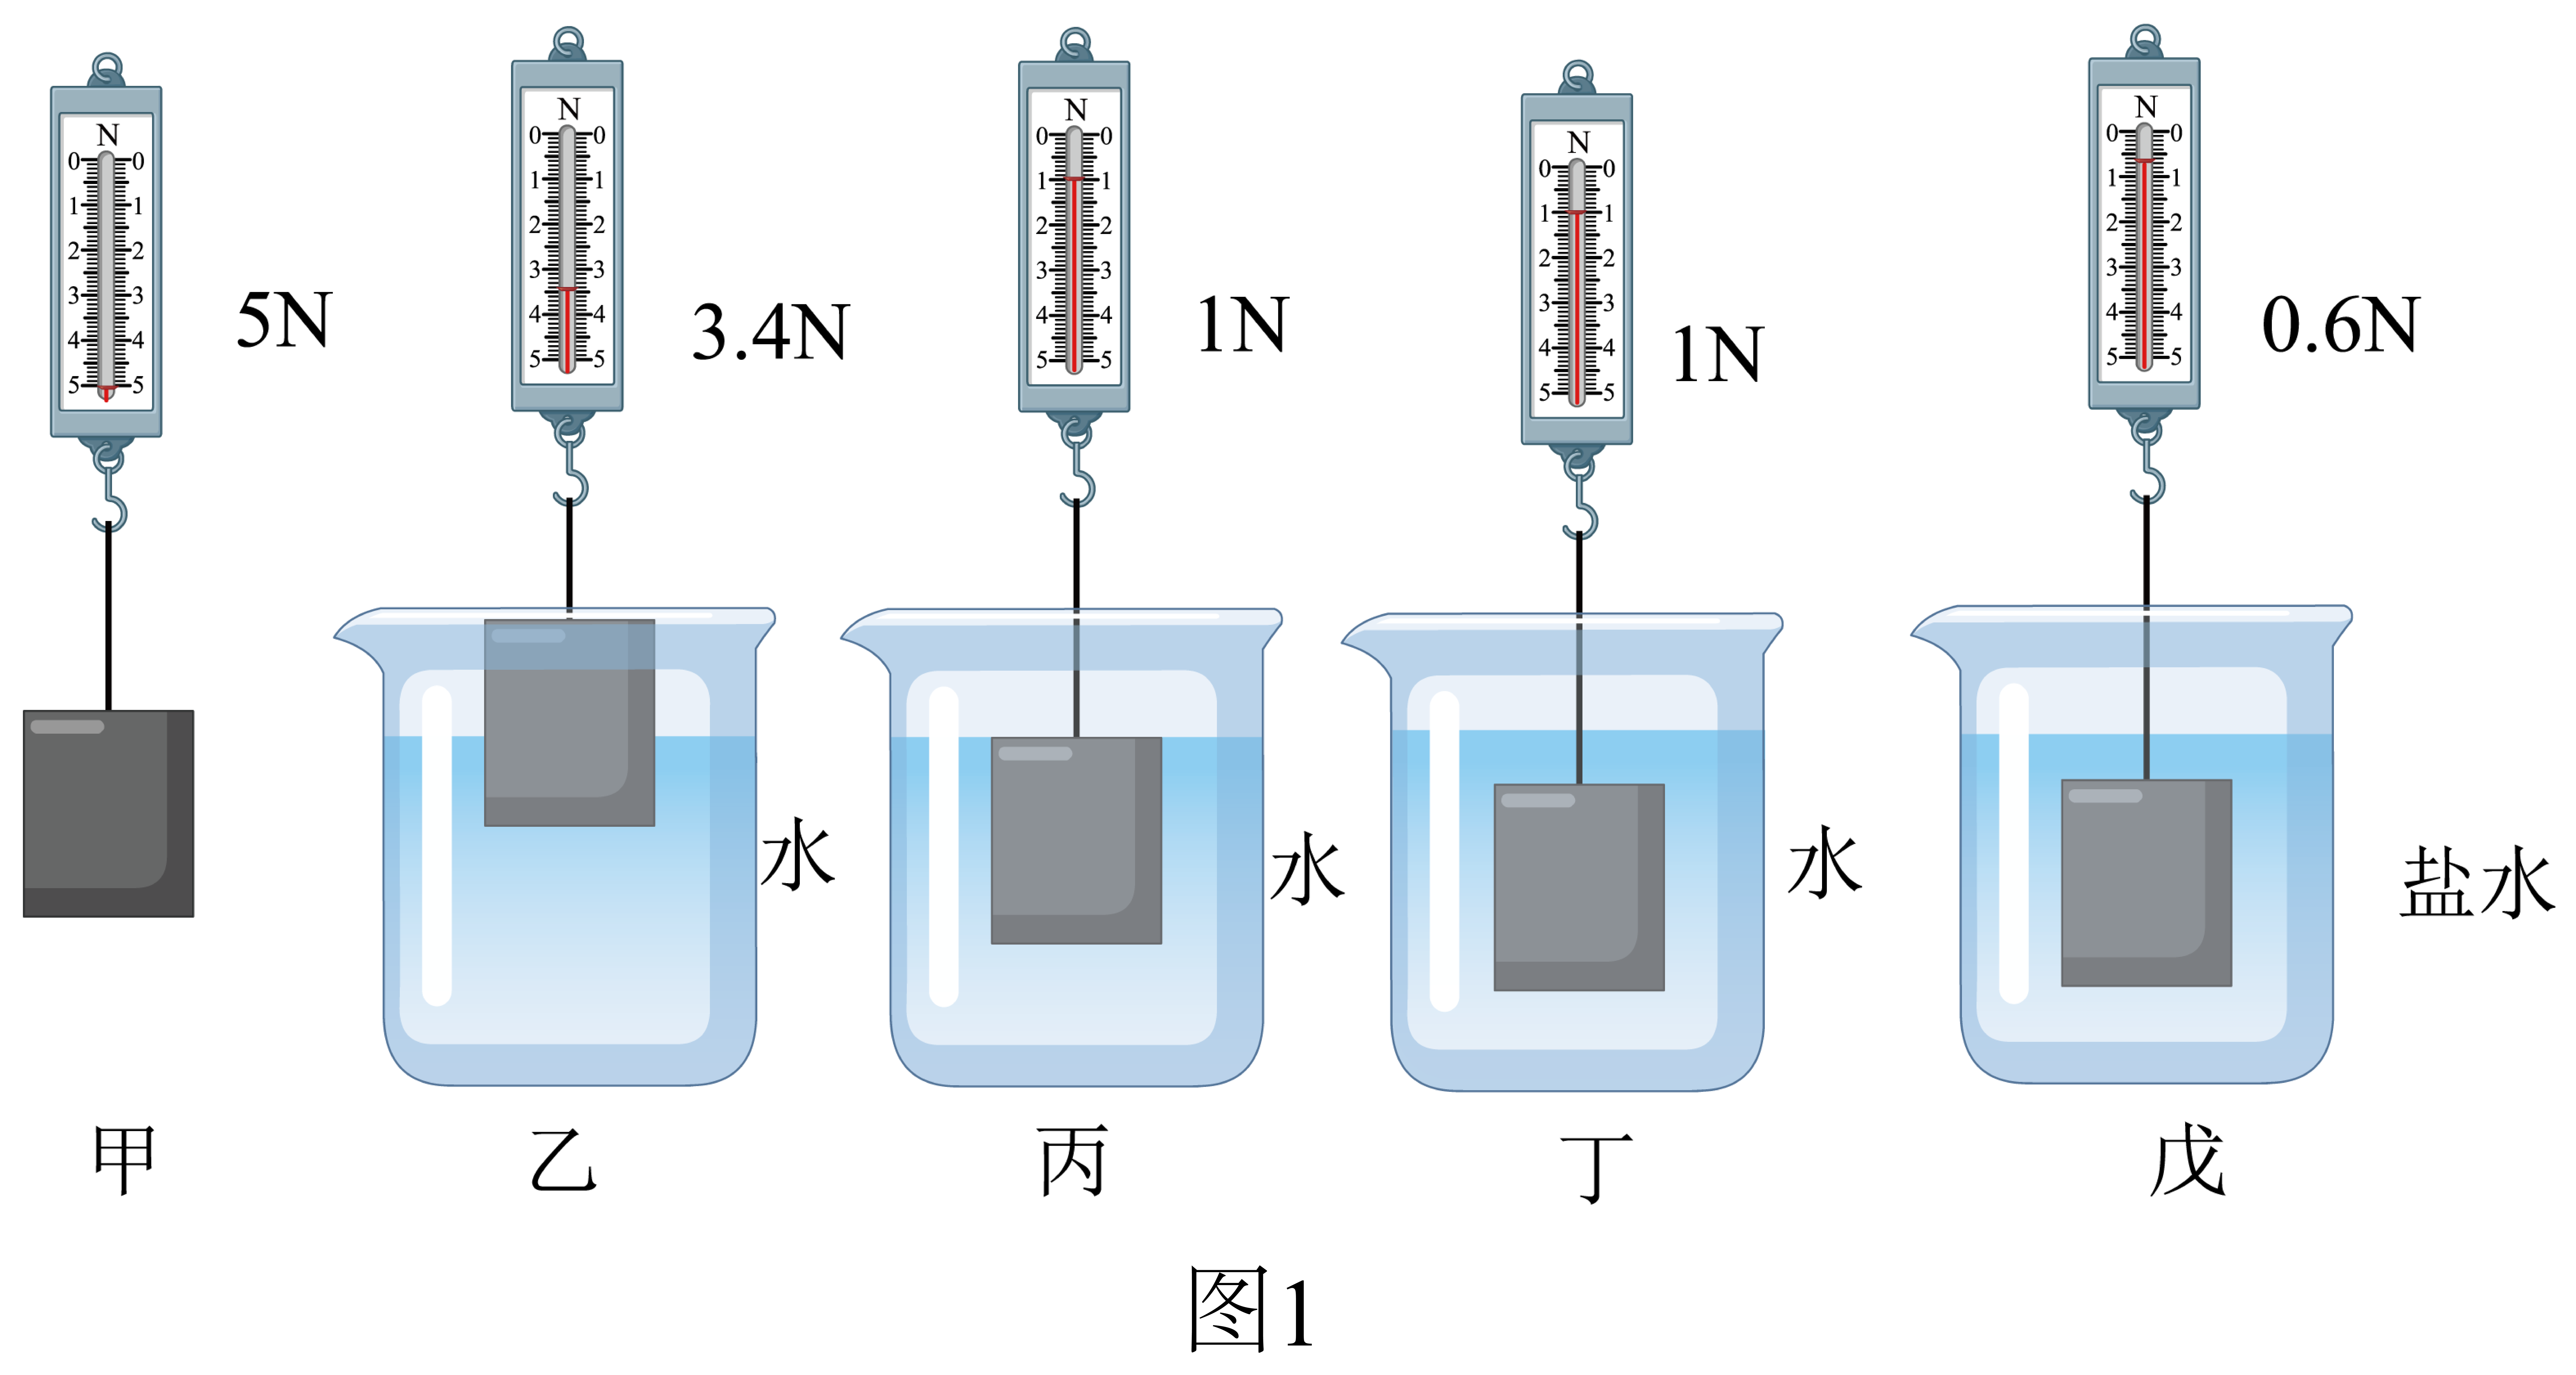 小明用弹簧测力计圆柱体两个相同的圆柱形容器分别装有一定量的水和